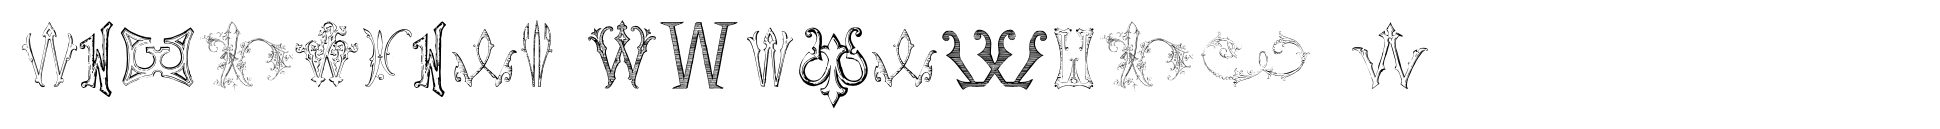 Victorian Alphabets W